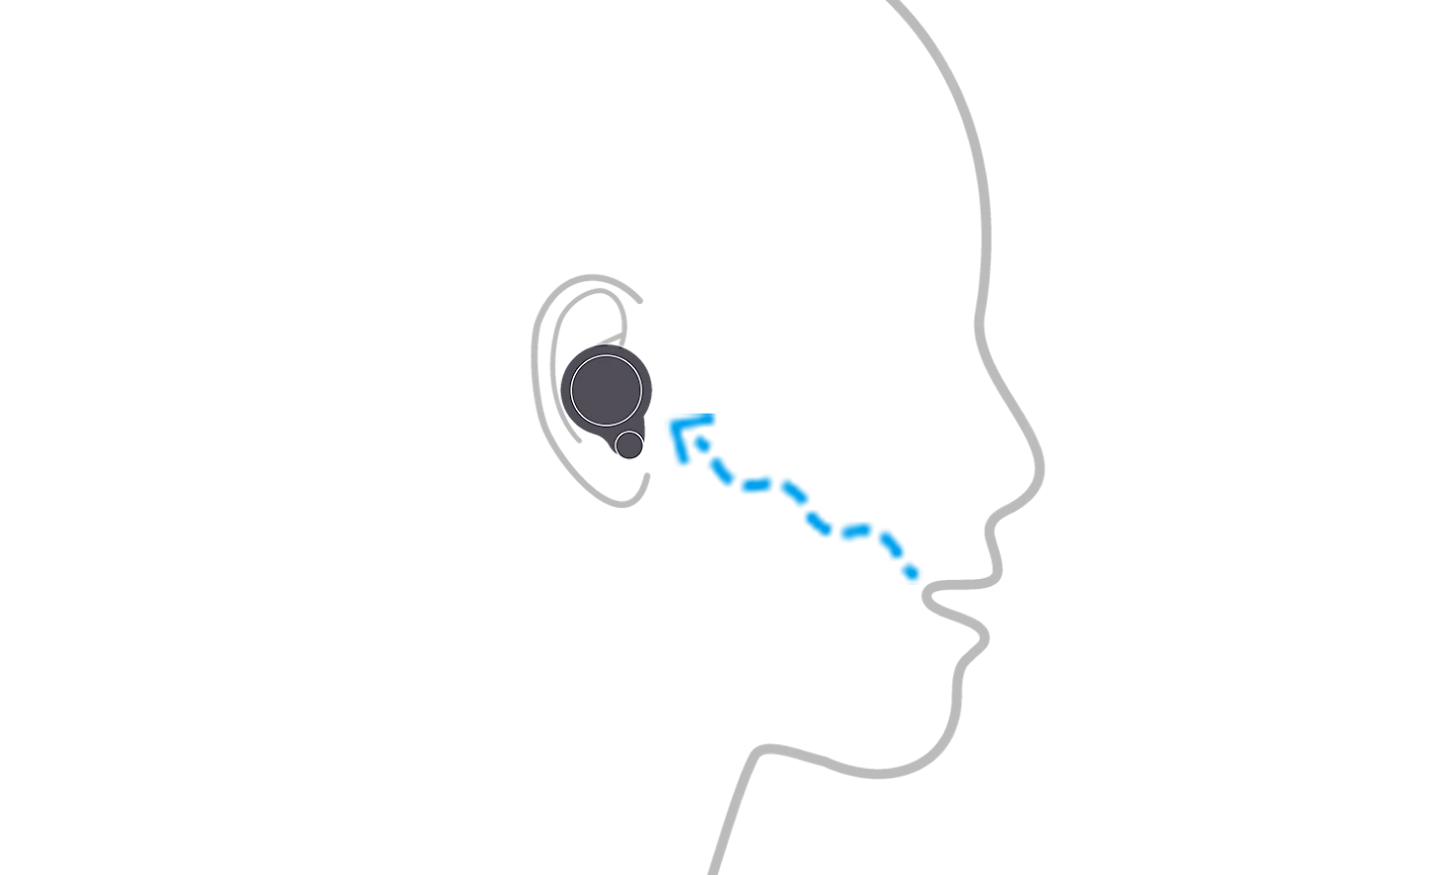 رسم توضيحي لشخص يرتدي سماعات الرأس WF-1000XM4 يوضح كيف يكتشف حساس التوصيل العظمي اهتزازات الكلام رسم توضيحي لشخص يرتدي سماعات الرأس WF-1000XM4 يوضح كيف يكتشف حساس التوصيل العظمي اهتزازات الكلام